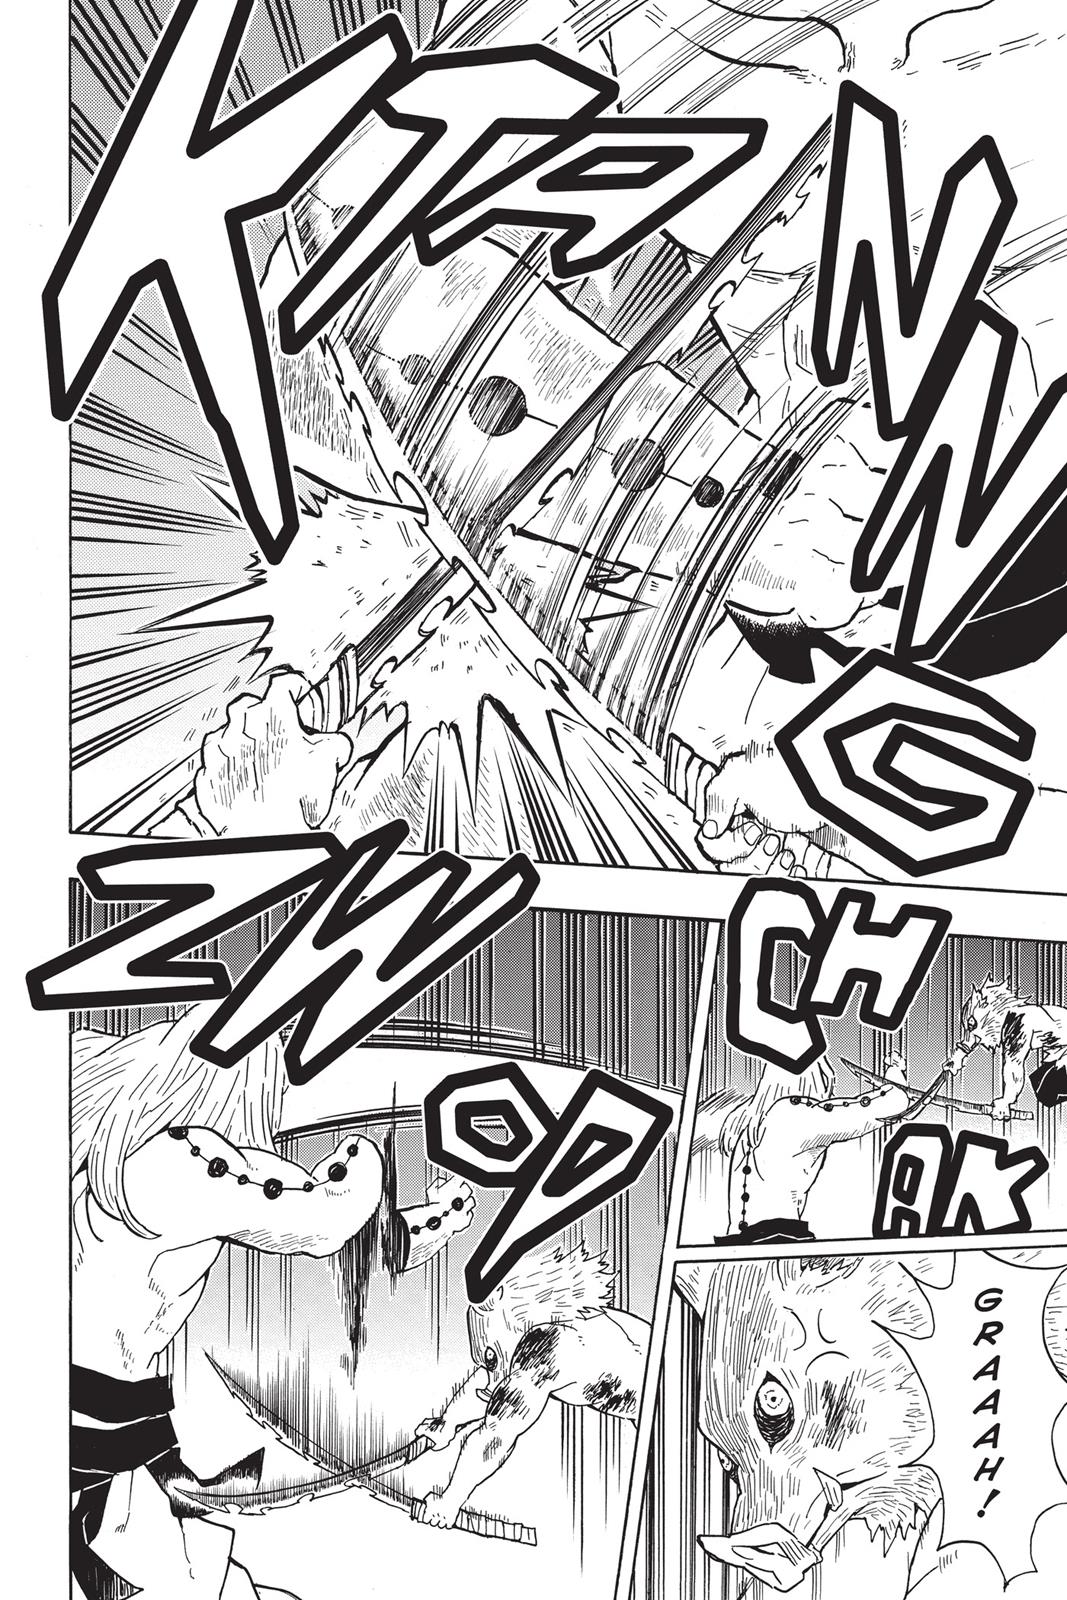 Demon Slayer Manga Manga Chapter - 36 - image 6